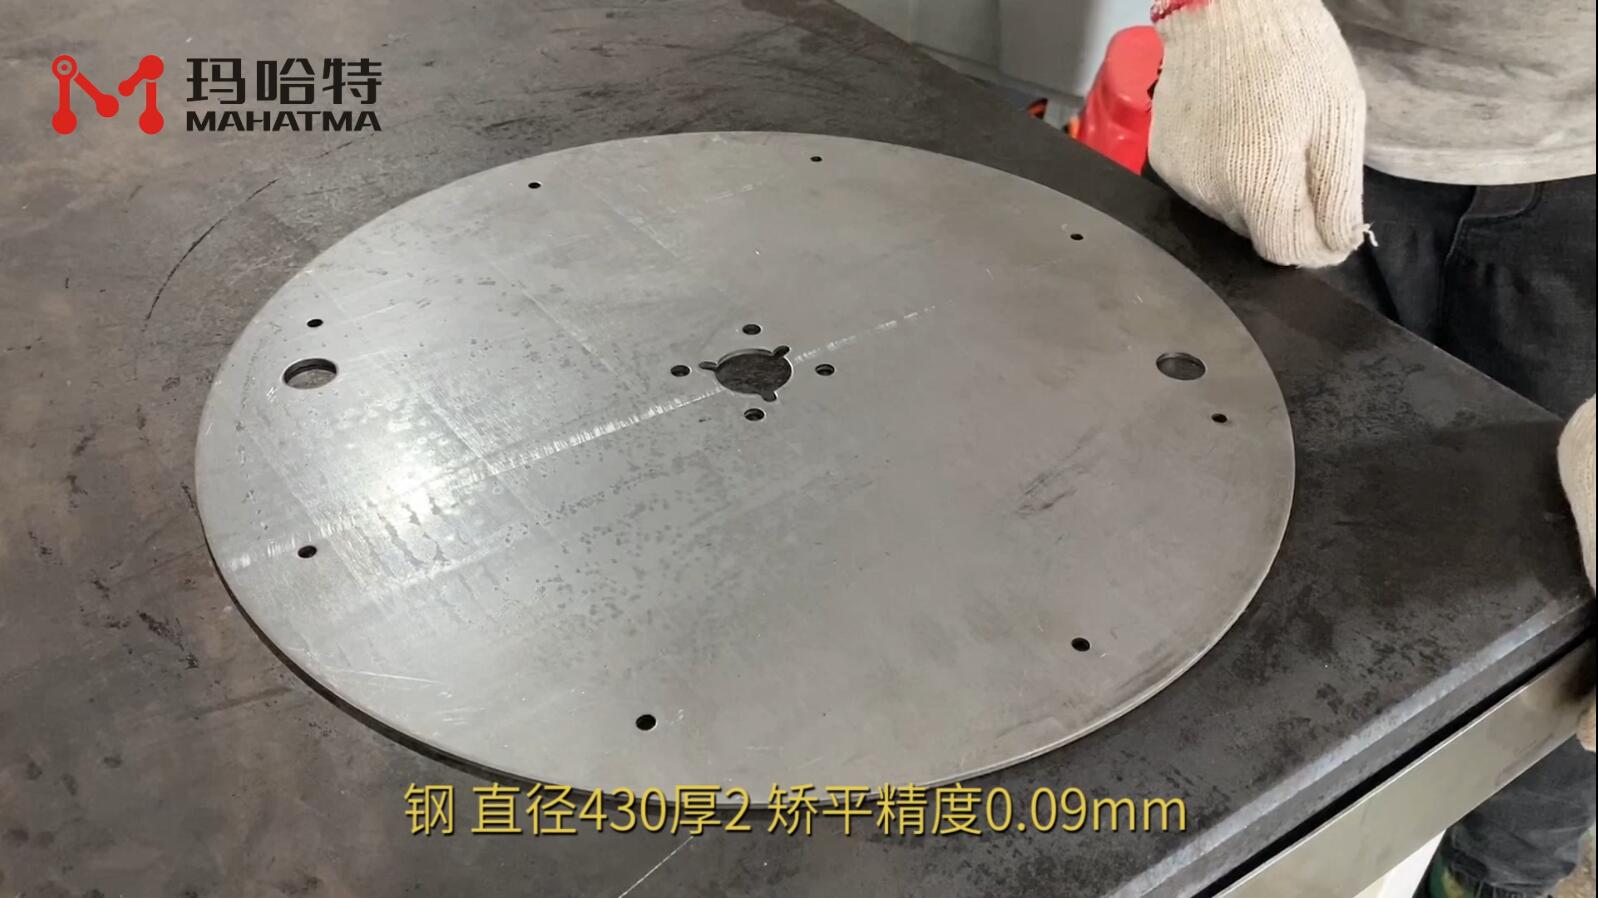 钢 MHT60-600 圆形 直径430厚2 矫平精度0.09mm